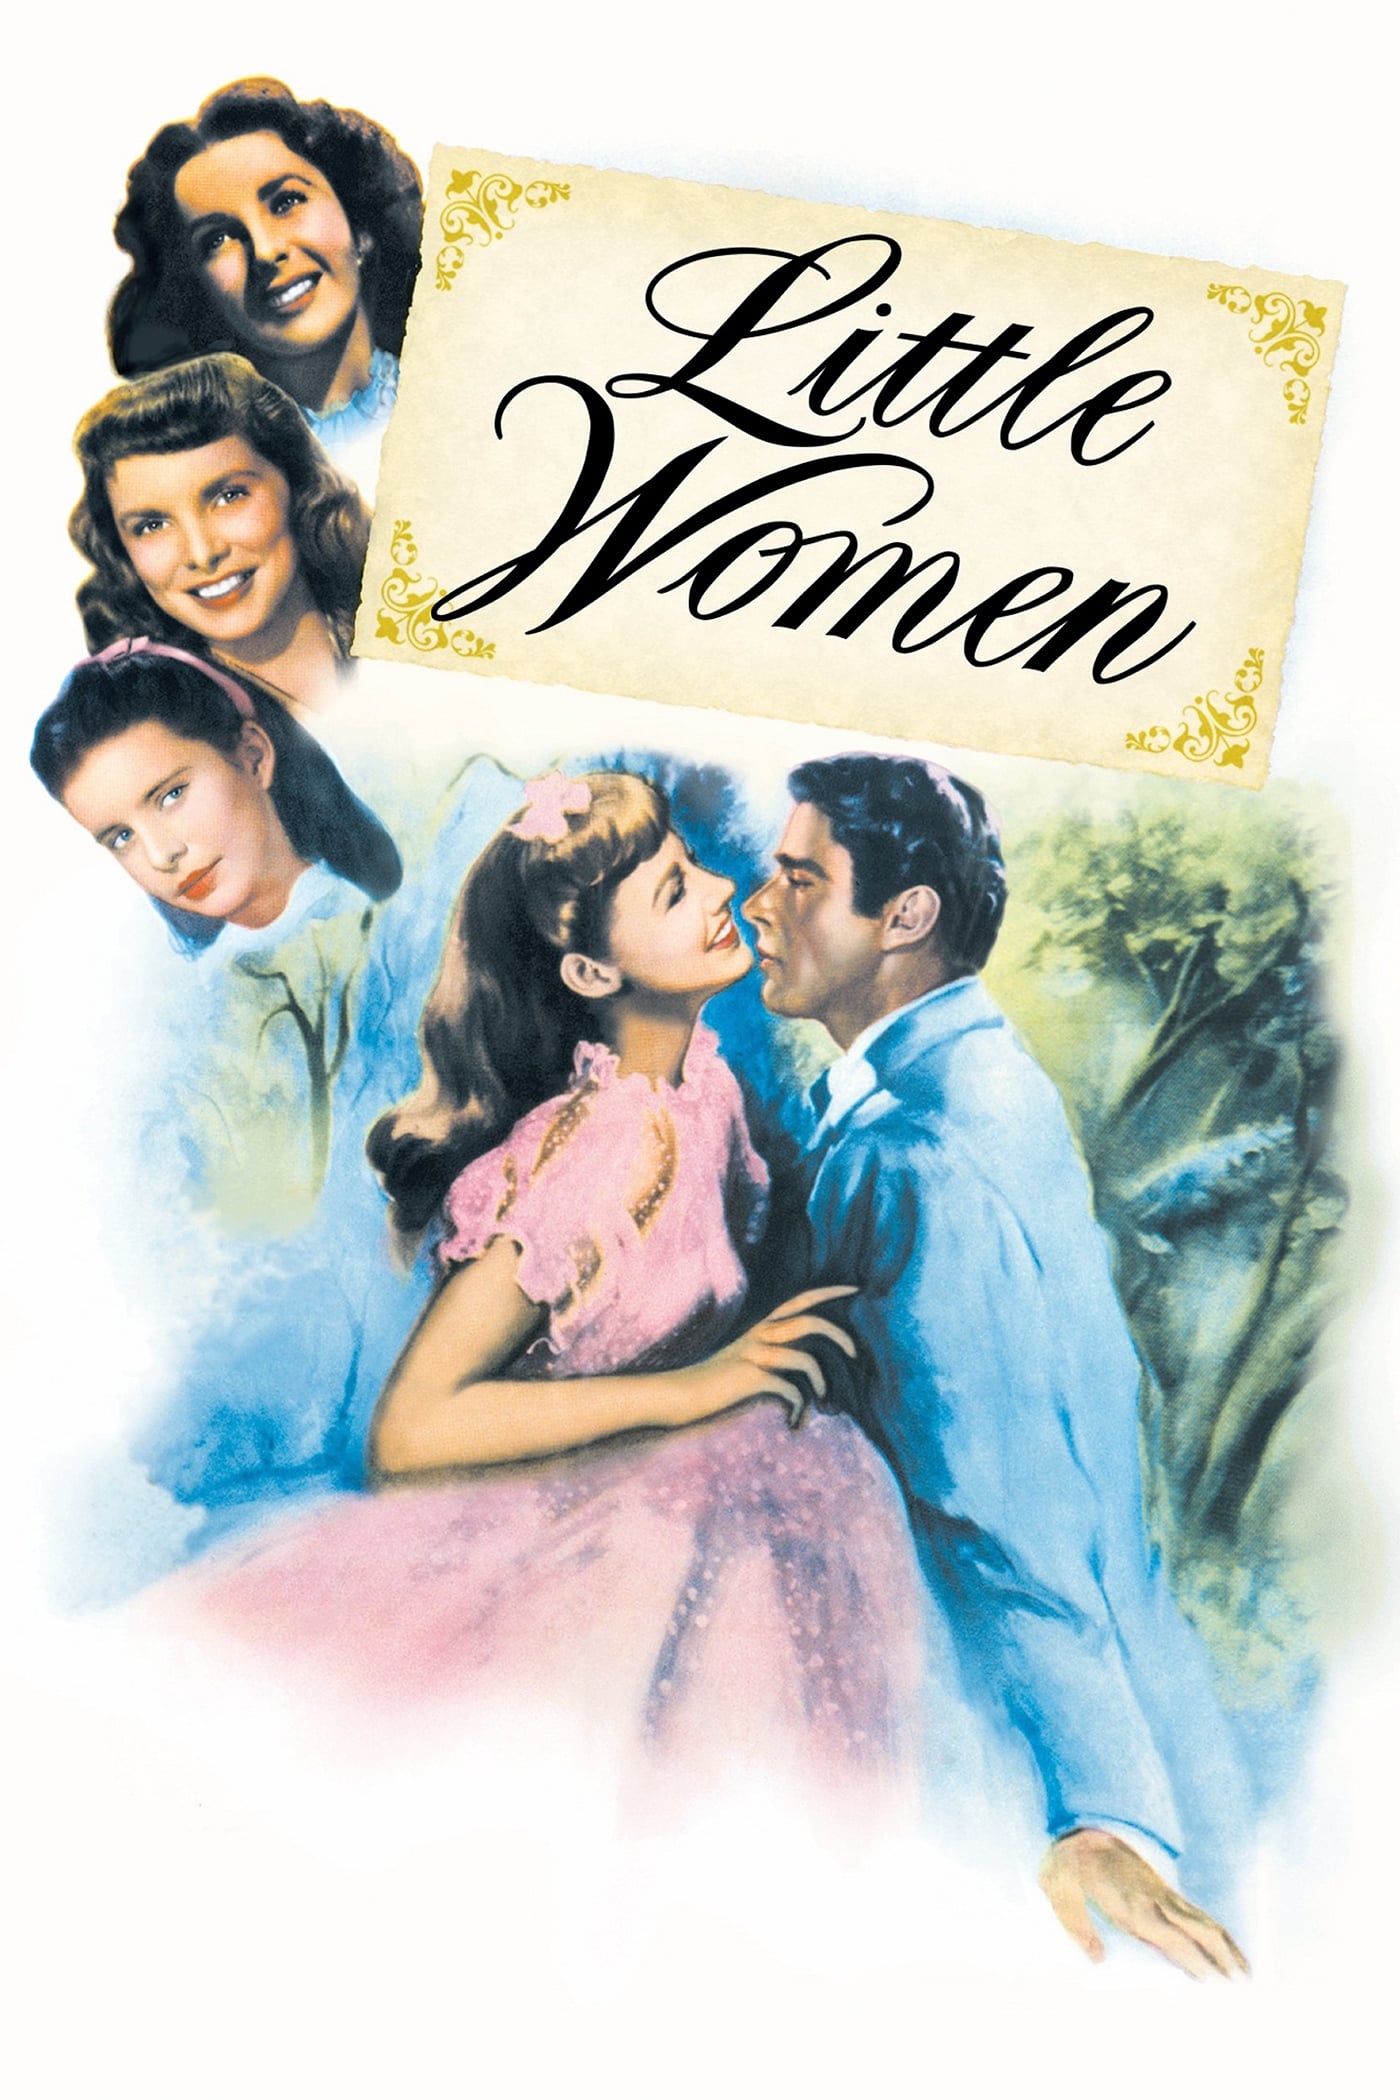 Little Women (1949)